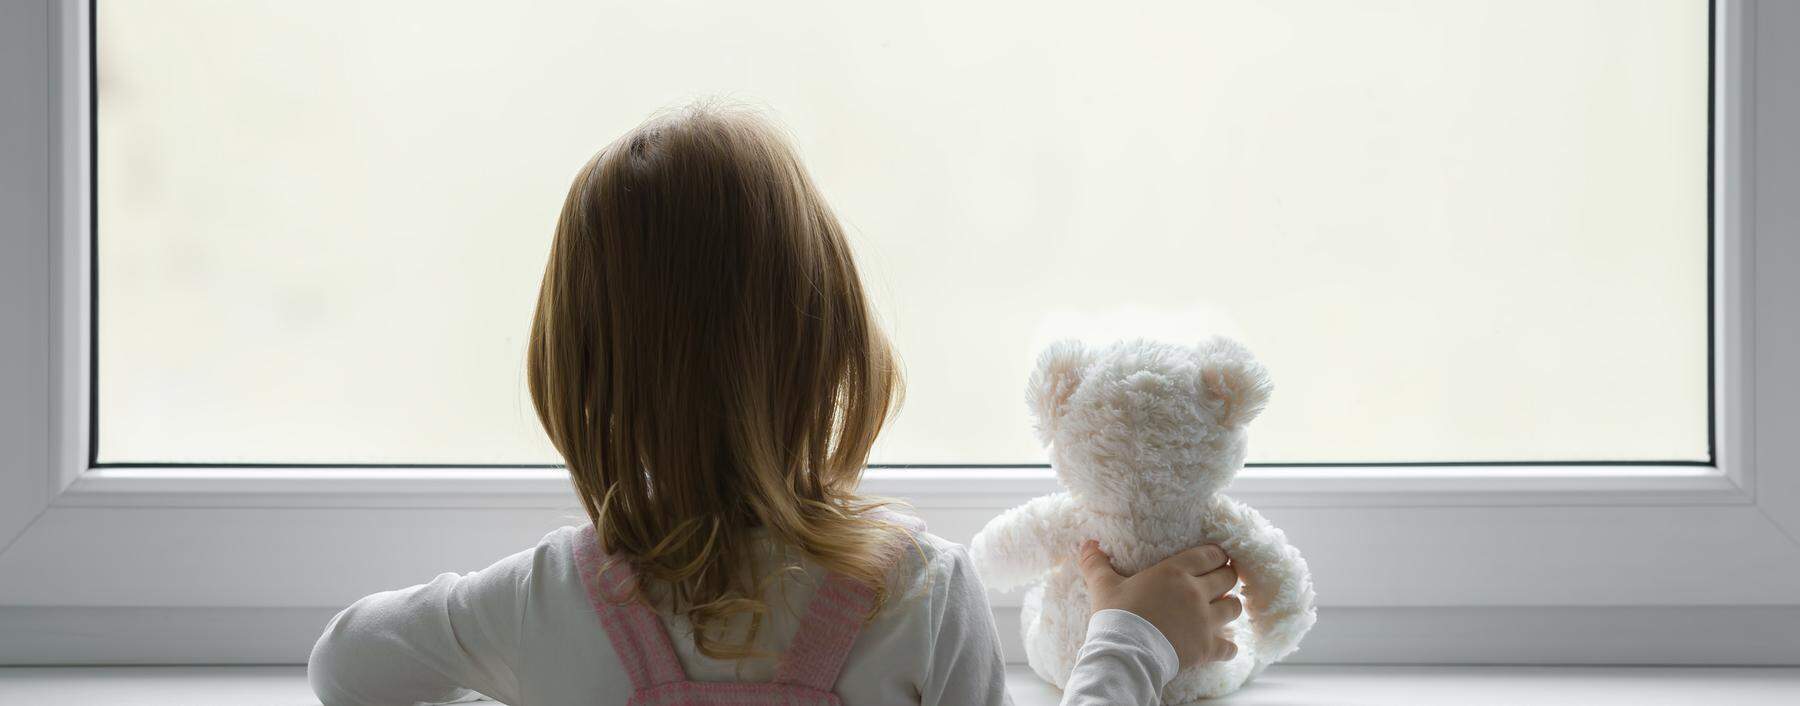 Stilles Leid: Kinder versuchen oft, keine Probleme zu verursachen, wenn sie mit psychisch belasteten Eltern konfrontiert sind.